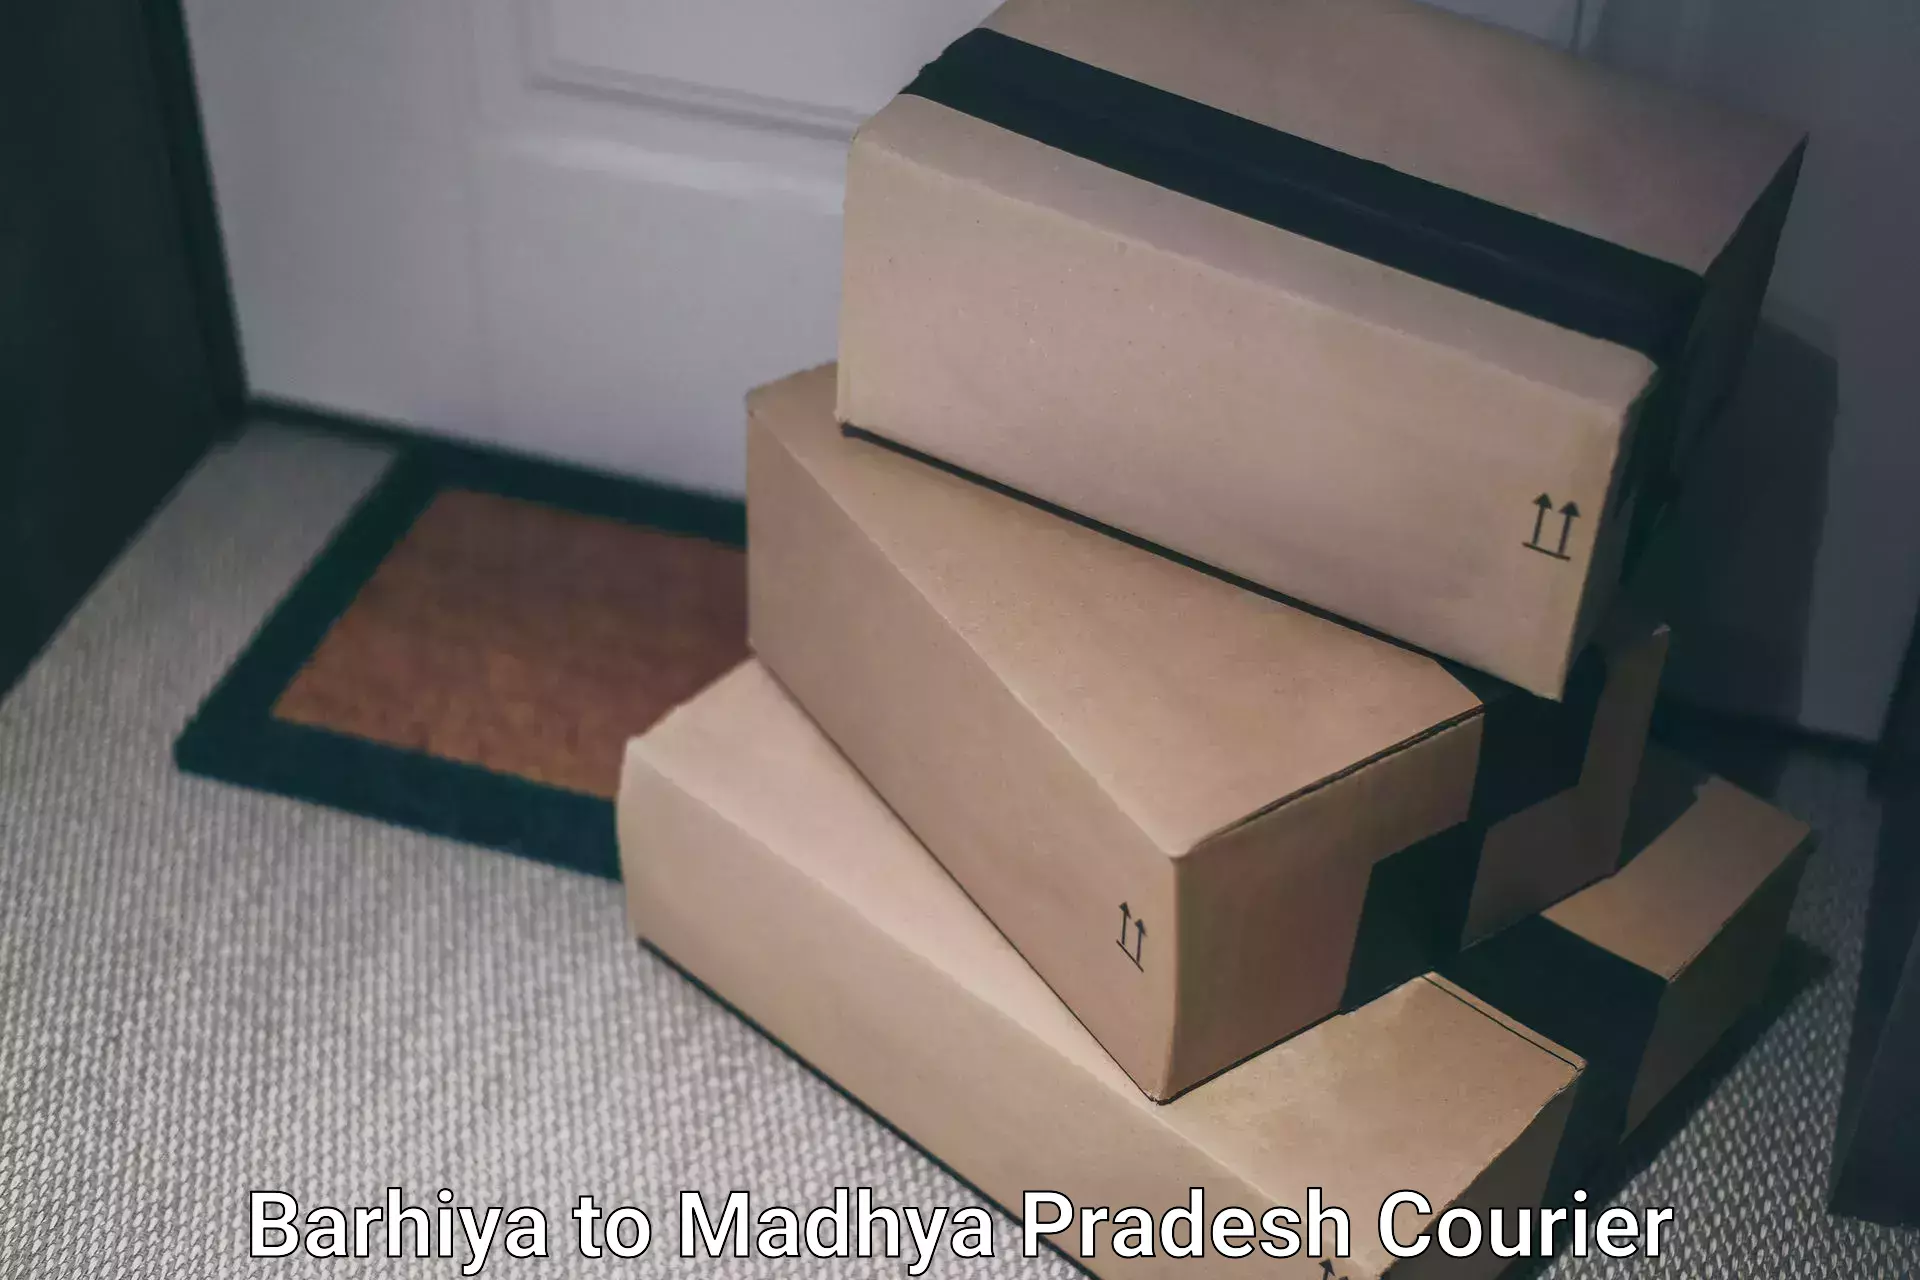 Premium courier solutions Barhiya to Madhya Pradesh